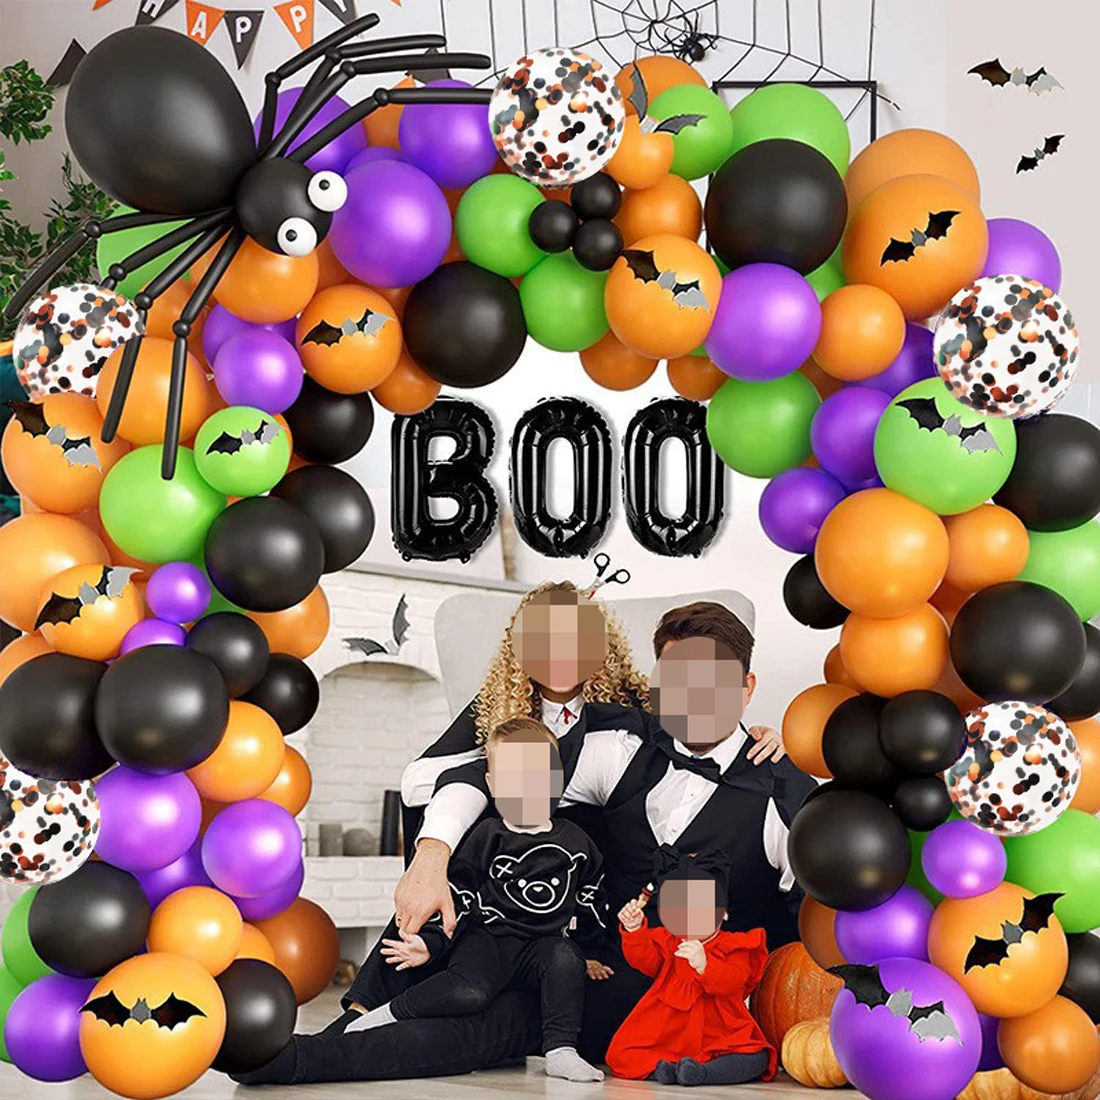 

Фиолетовая оранжевая гирлянда на Хэллоуин, фотография, паук, летучая мышь, алюминиевая пленка, воздушный шар на Хэллоуин, украшение 2023